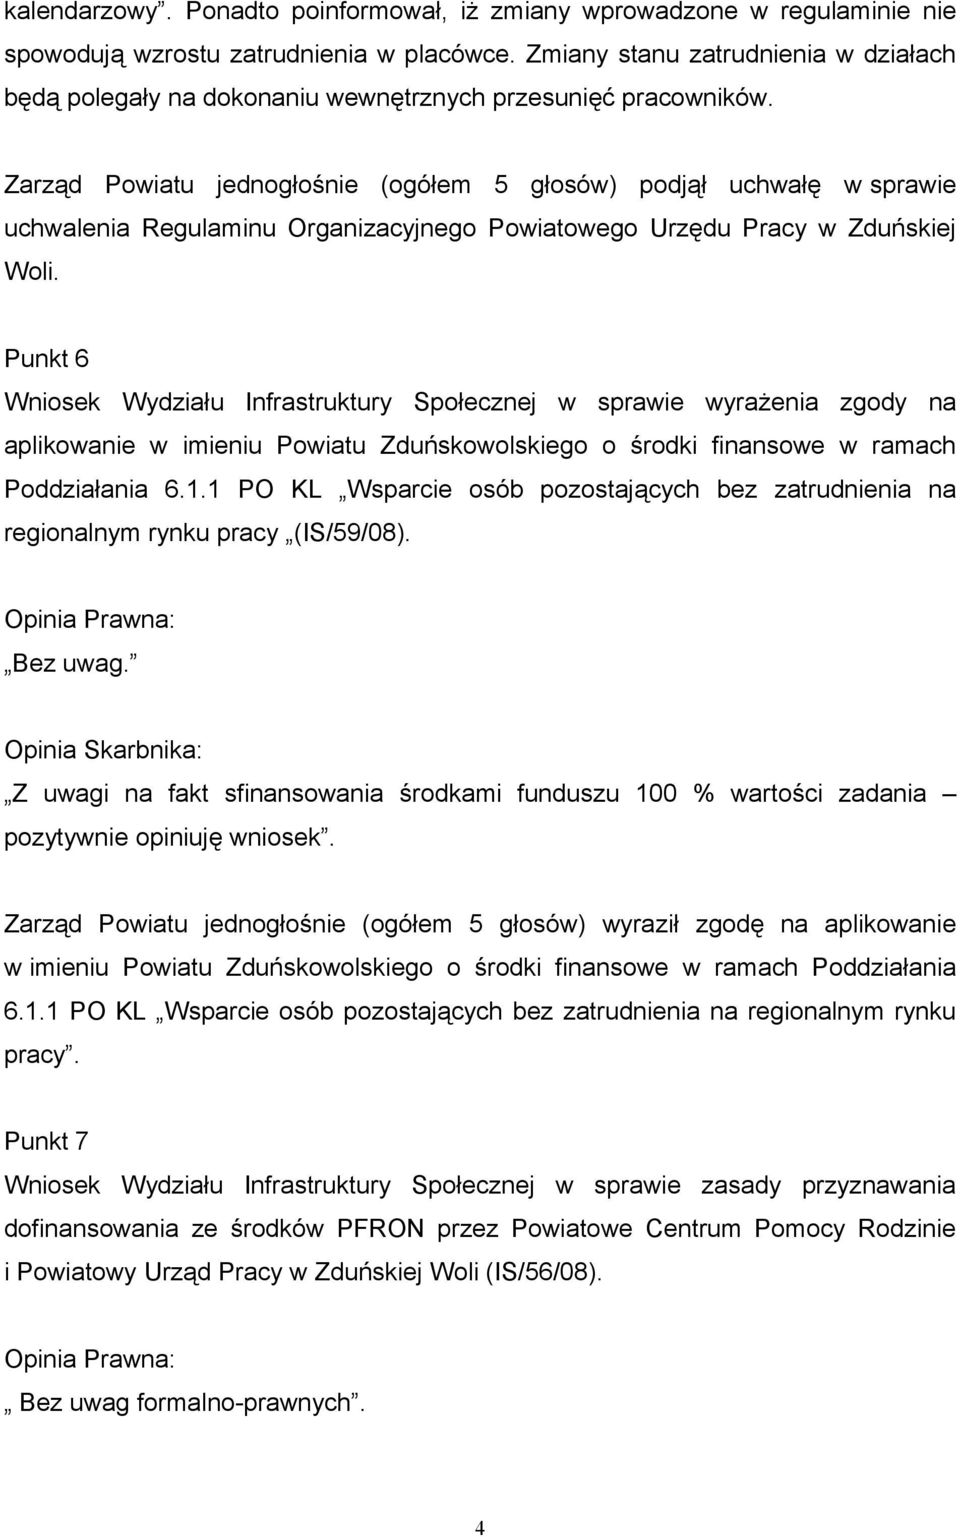 Zarząd Powiatu jednogłośnie (ogółem 5 głosów) podjął uchwałę w sprawie uchwalenia Regulaminu Organizacyjnego Powiatowego Urzędu Pracy w Zduńskiej Woli.